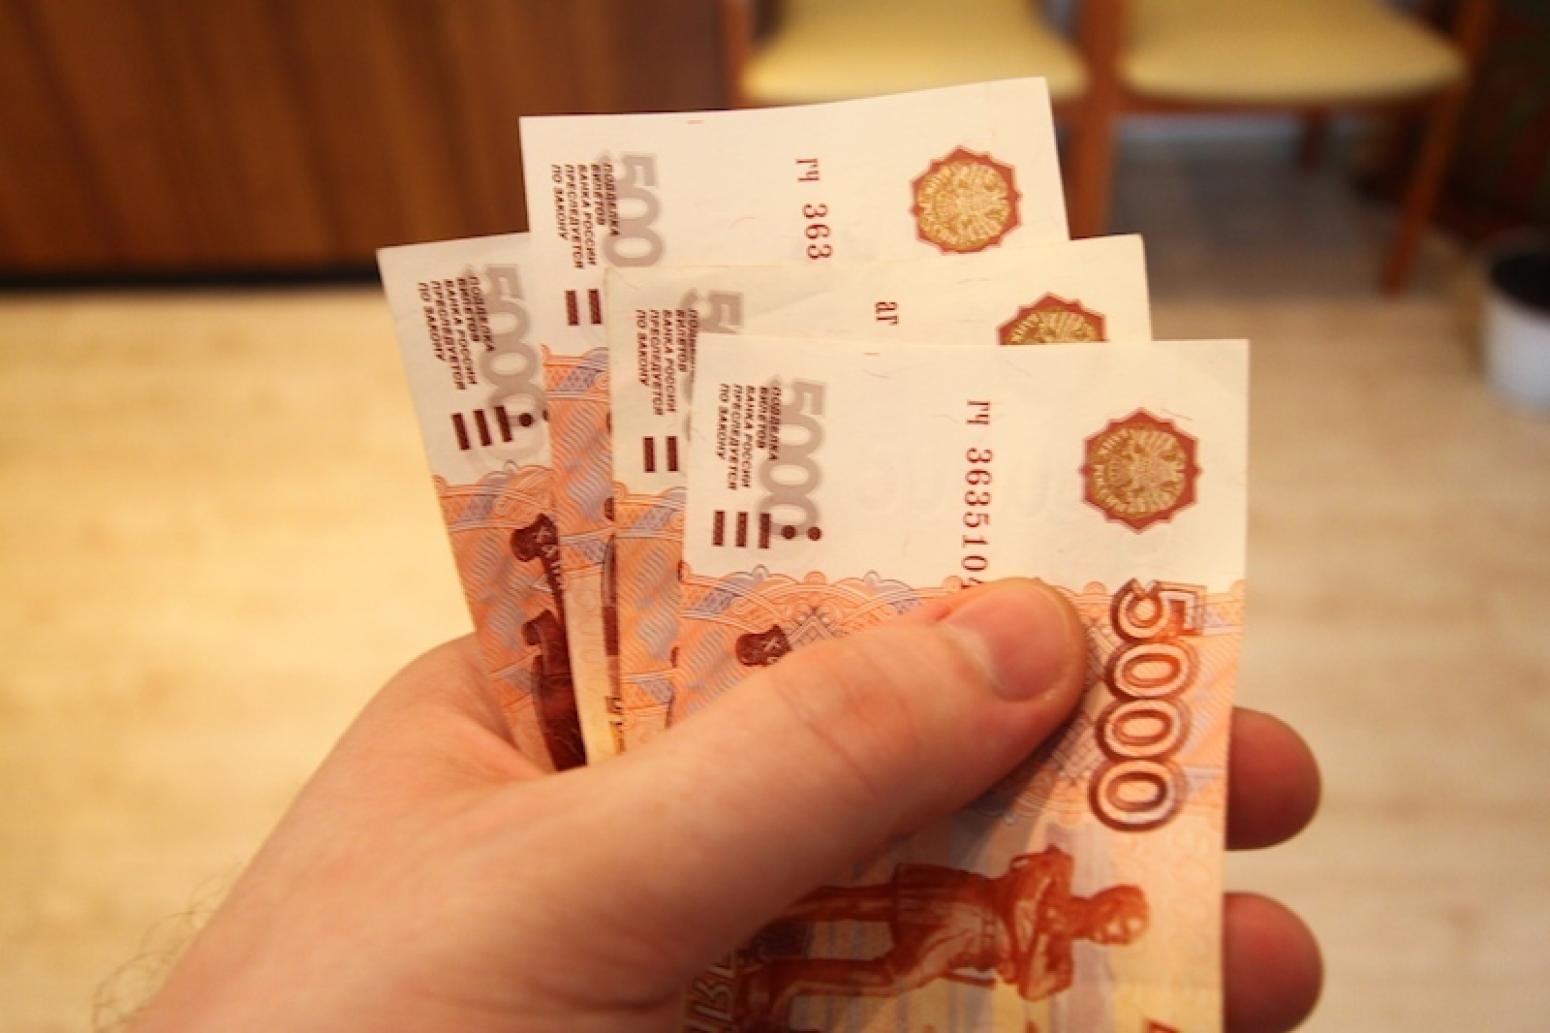 000 рублей на 5 лет. 20 Тысяч рублей в руках. Деньги на столе. 15000 Рублей в руках. 15 Тысяч рублей в руках.